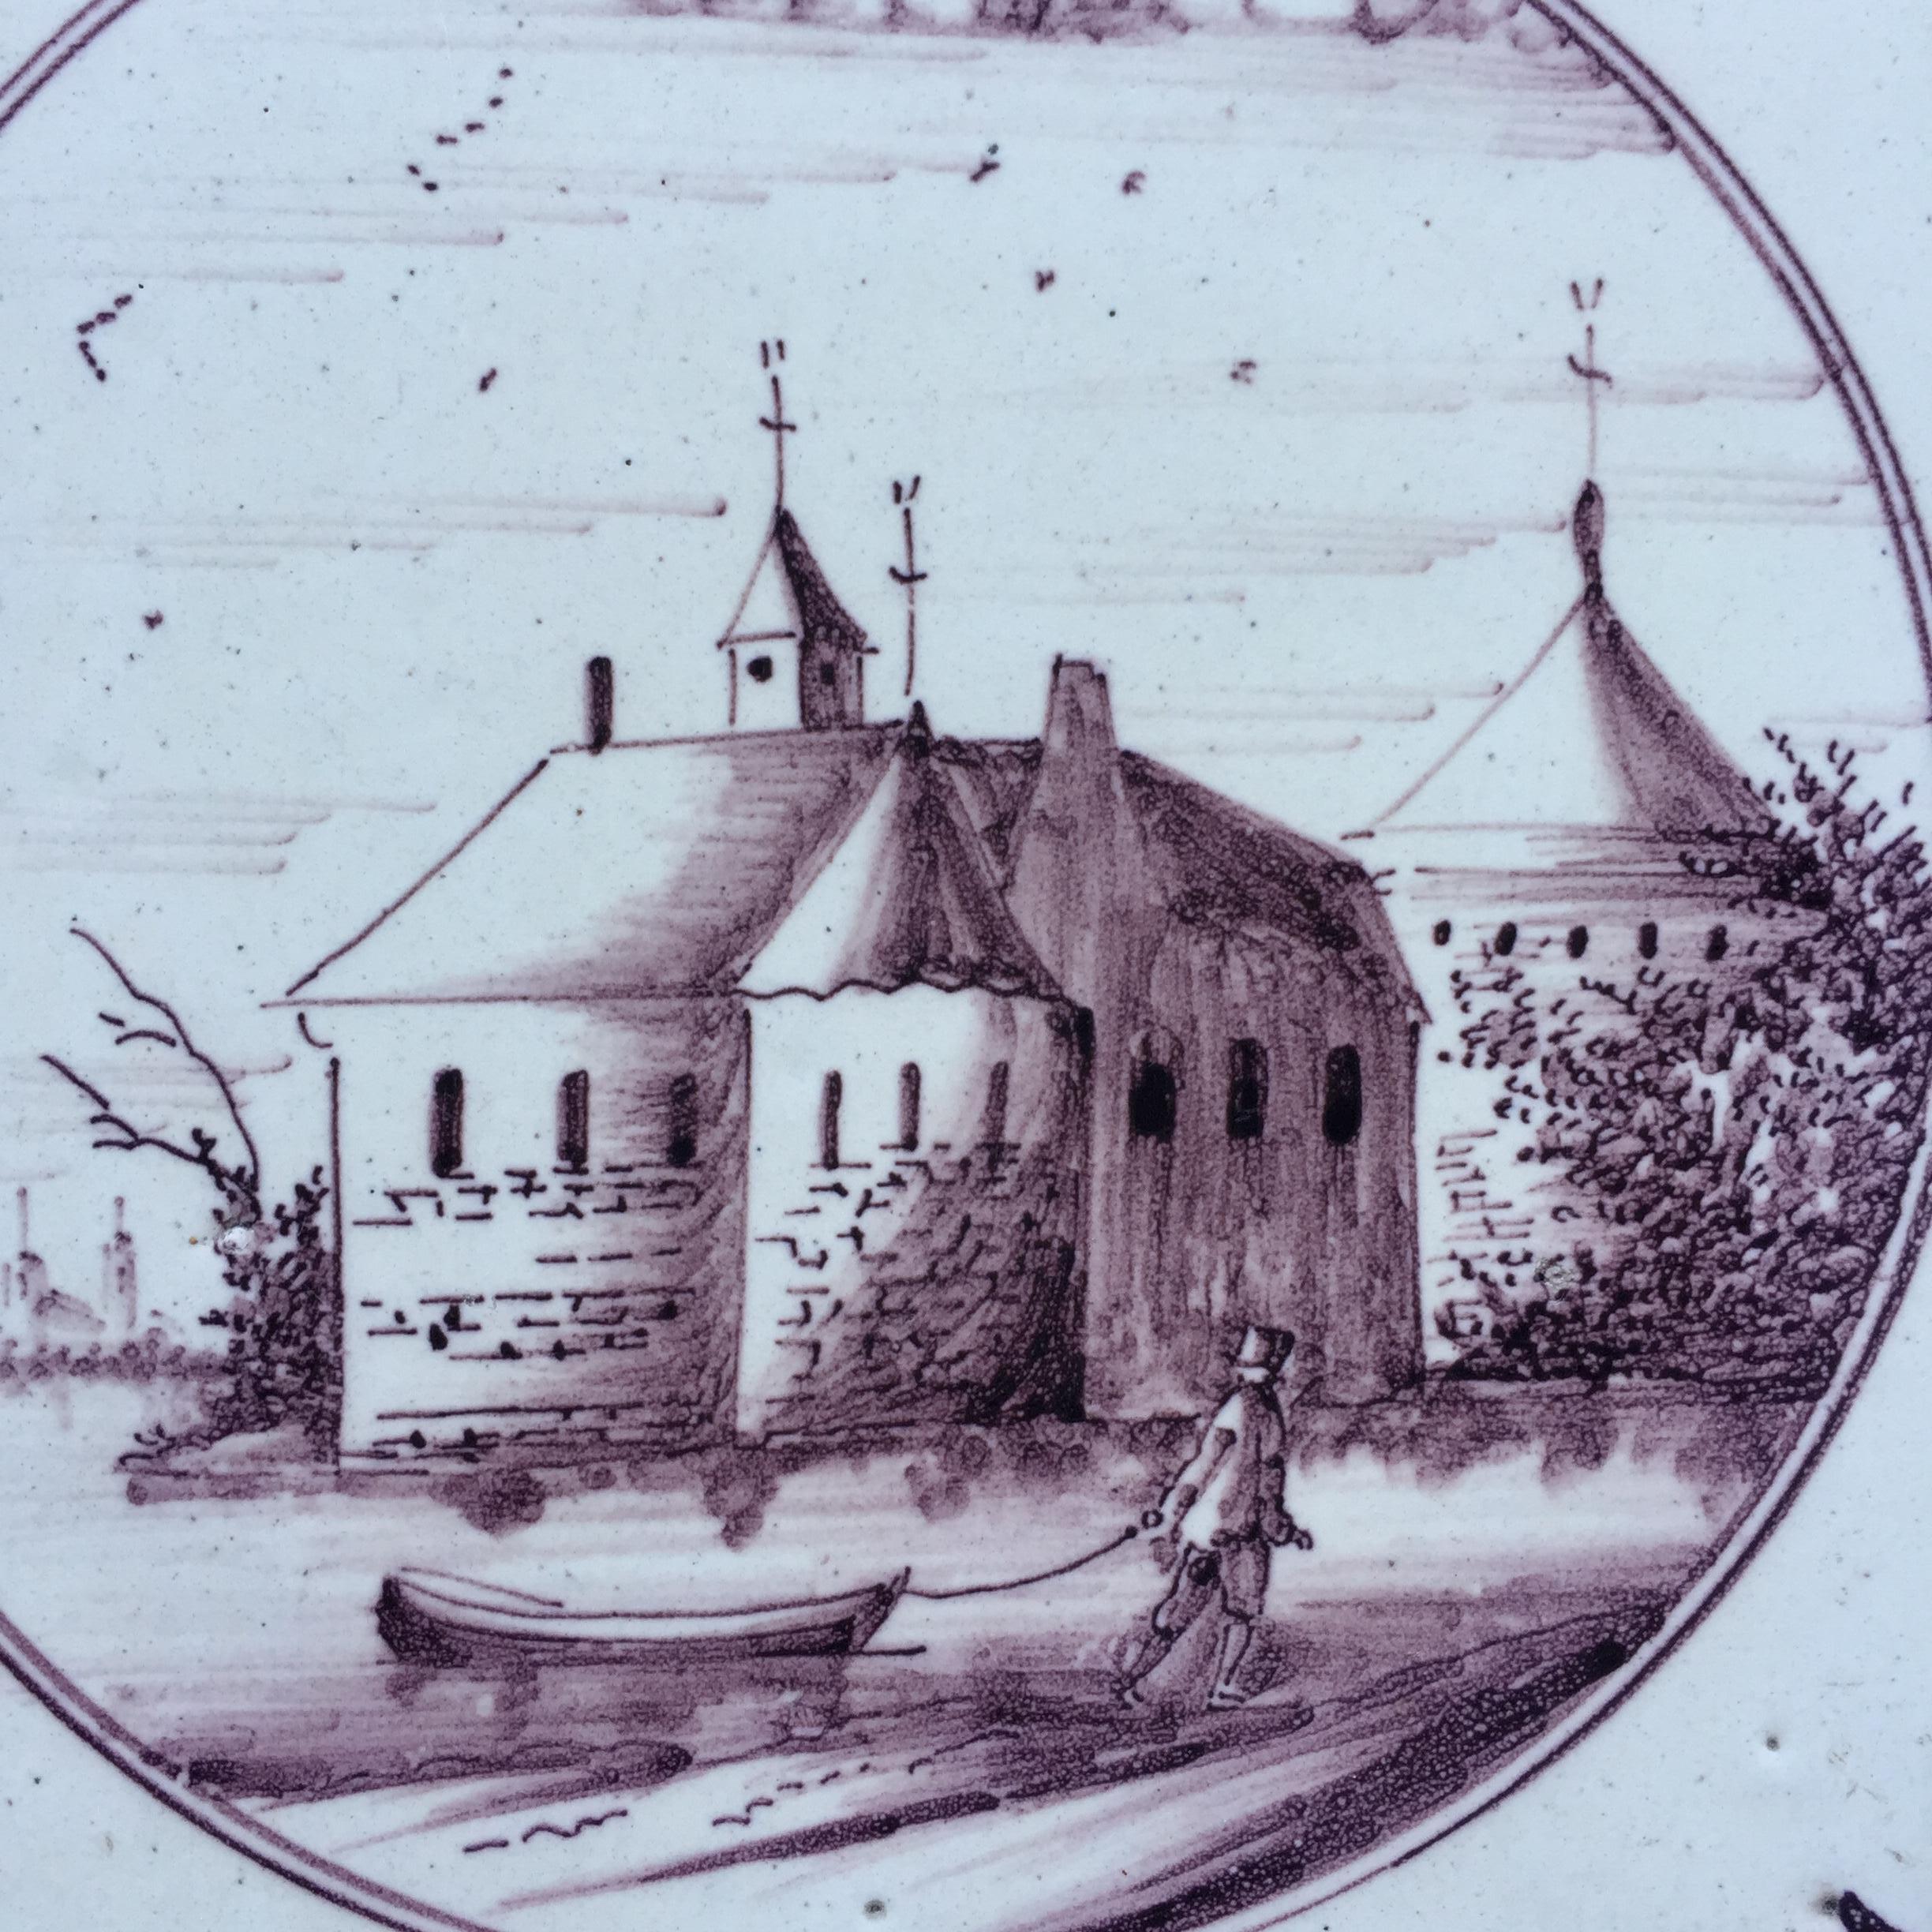 Les Pays-Bas
Amsterdam
1800 – 1825

Un carreau de paysage inhabituel avec la décoration d'un château au bord d'une rivière avec, sur le devant, un homme avec un bateau, peint à l'intérieur d'un cercle. Avec une toute petite décoration d'angle